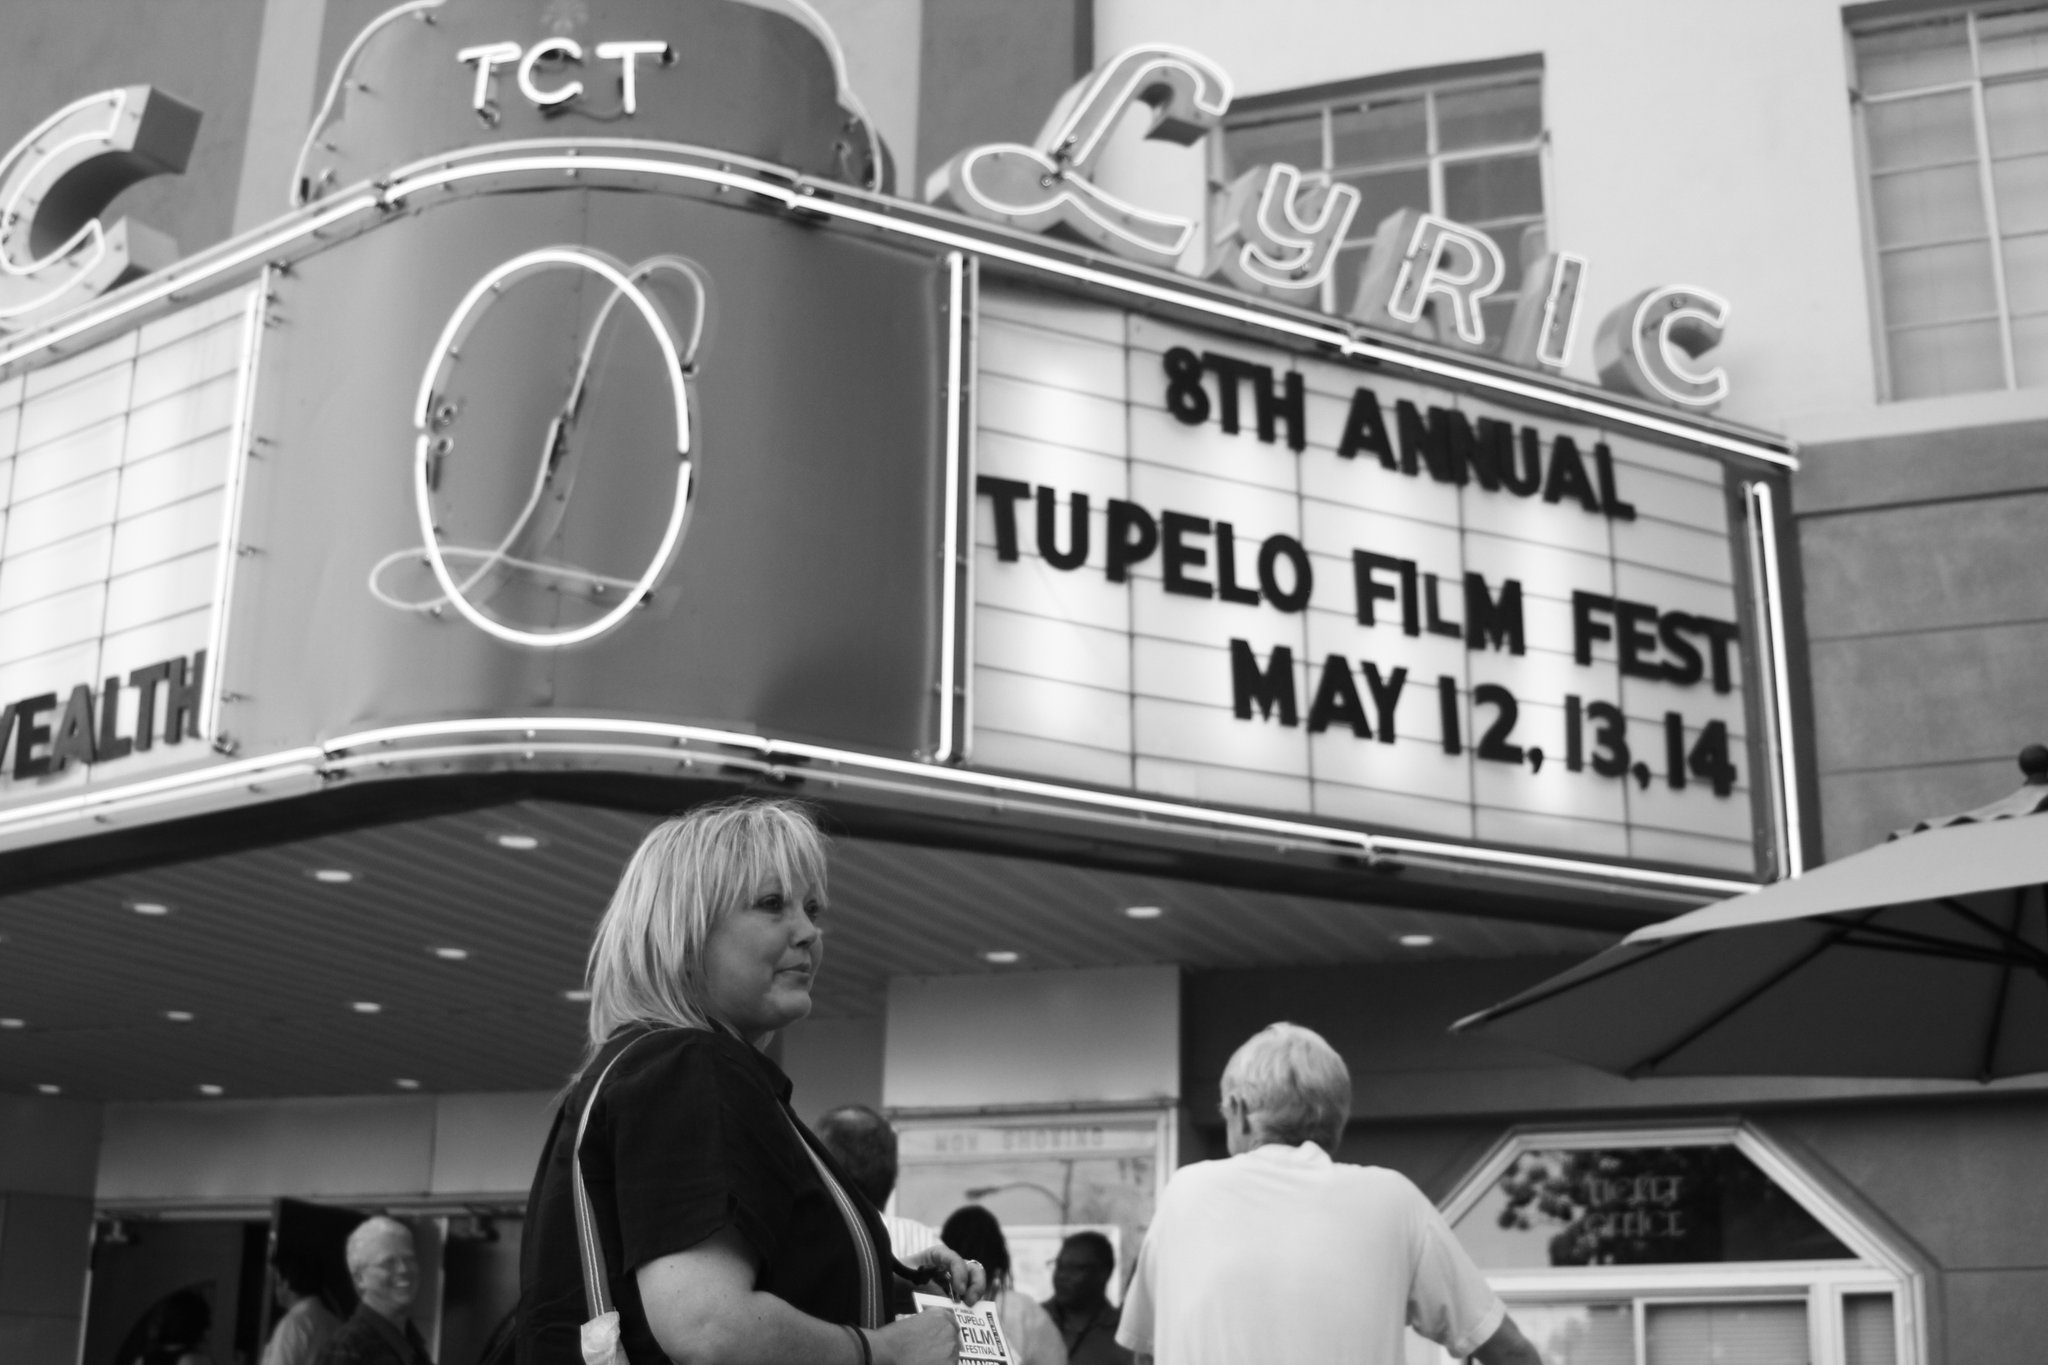 Tupelo Film Festival (2011)